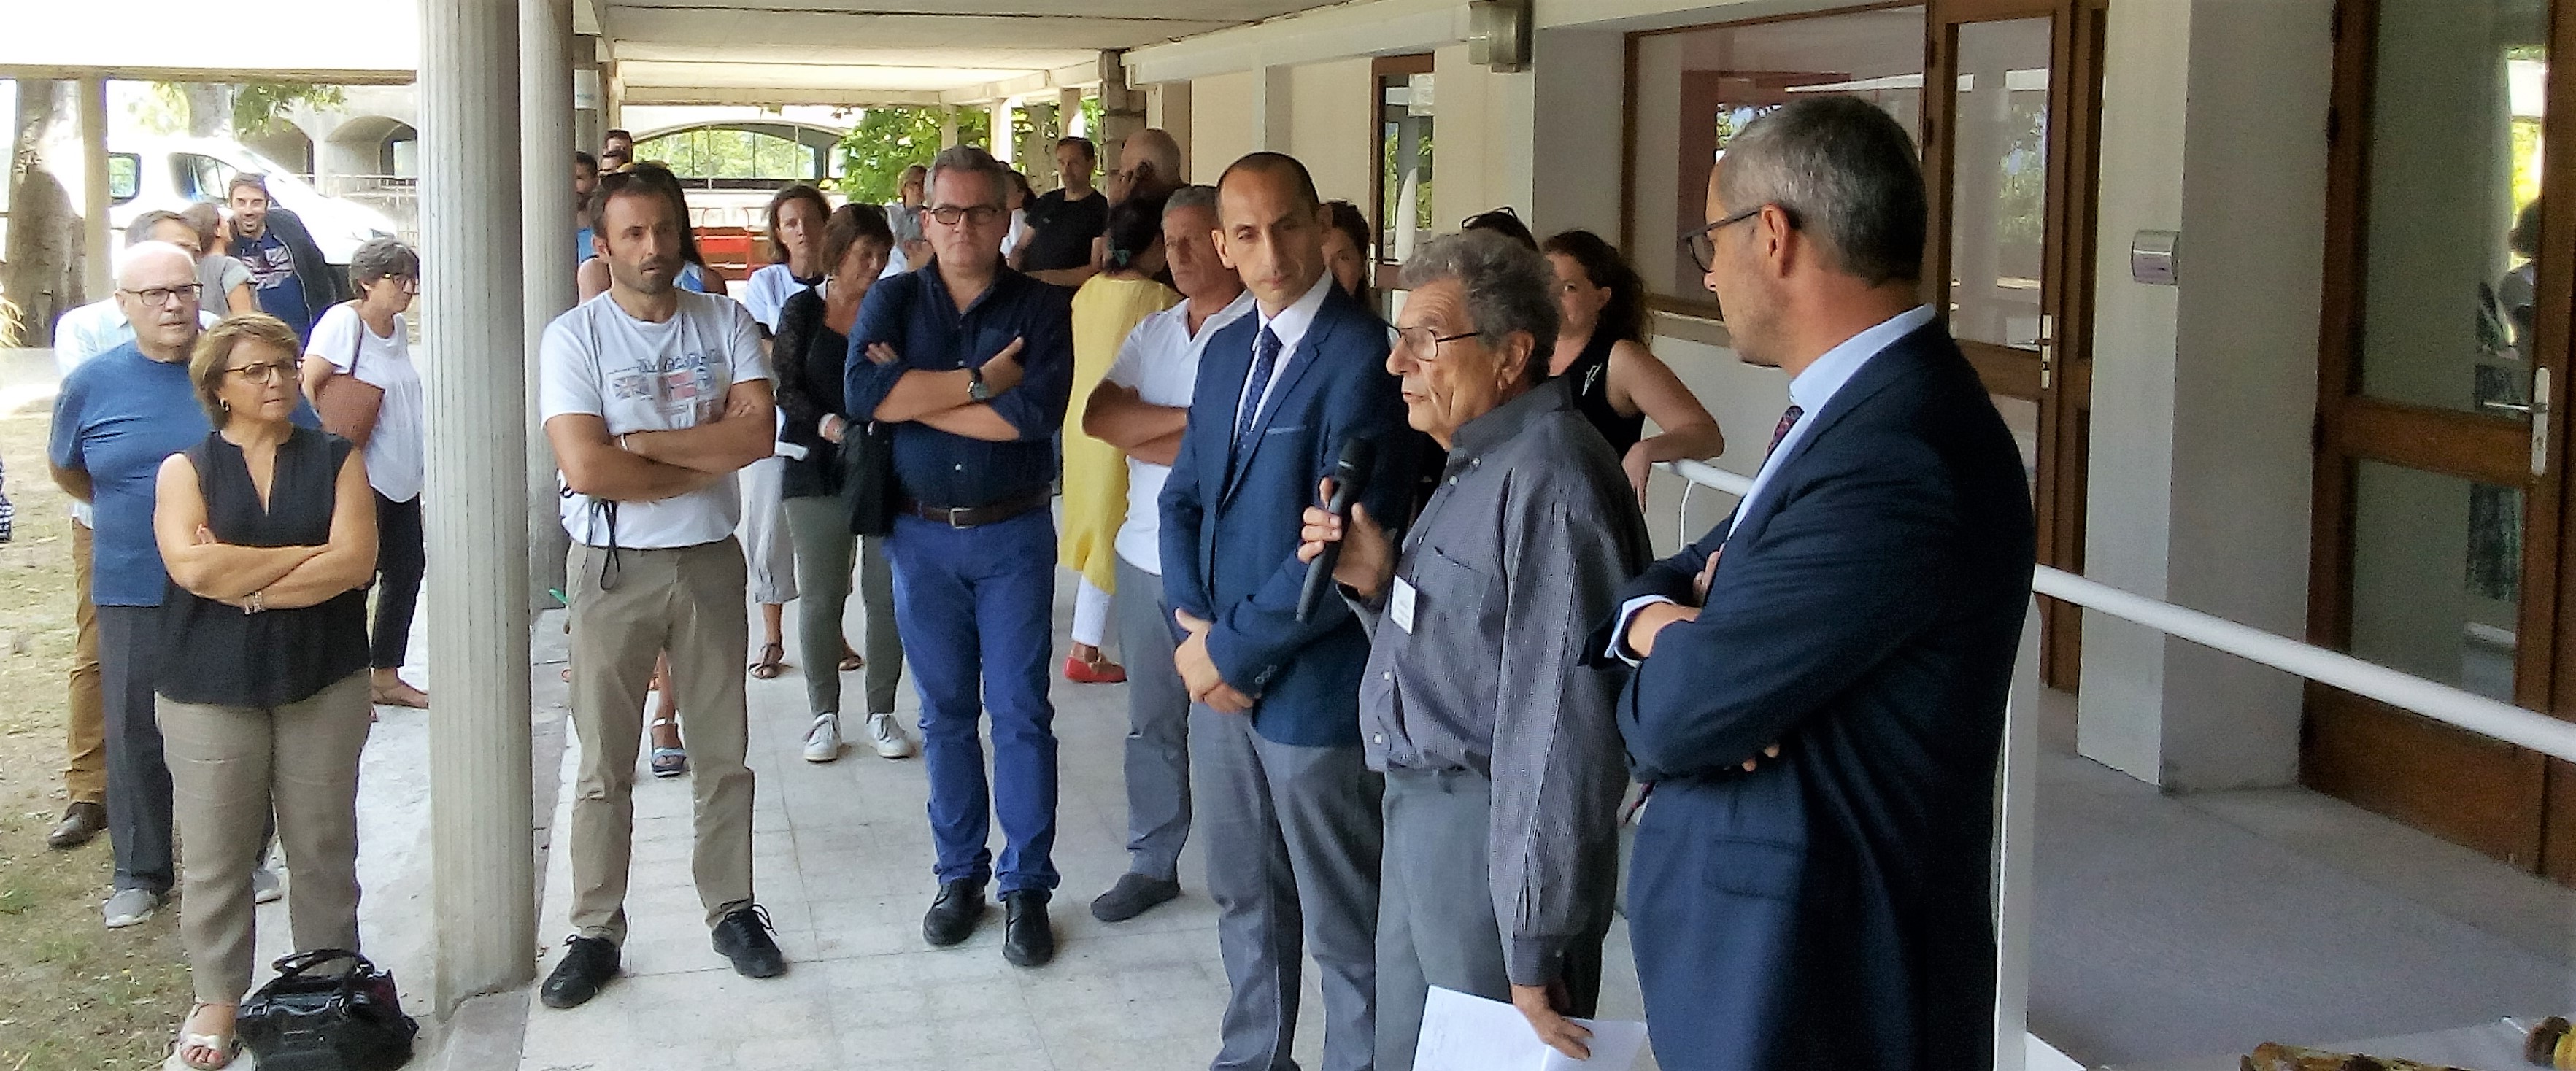 Ajaccio : Une Maison des usagers au Centre Hospitalier de Castelluccio, un vrai pas de franchi